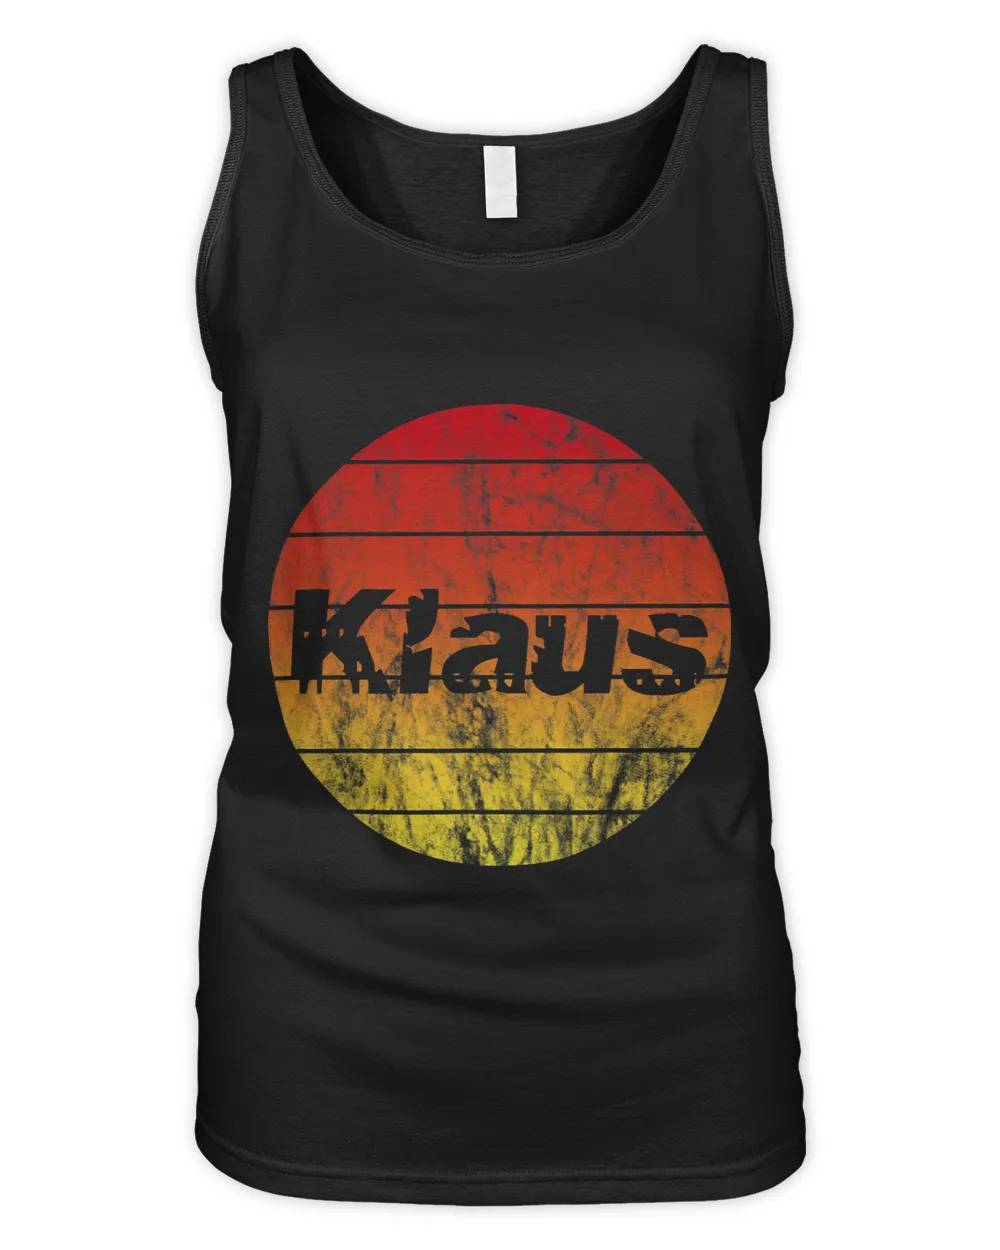 Name Klaus First Name Klaus Sunset Sun Vintage